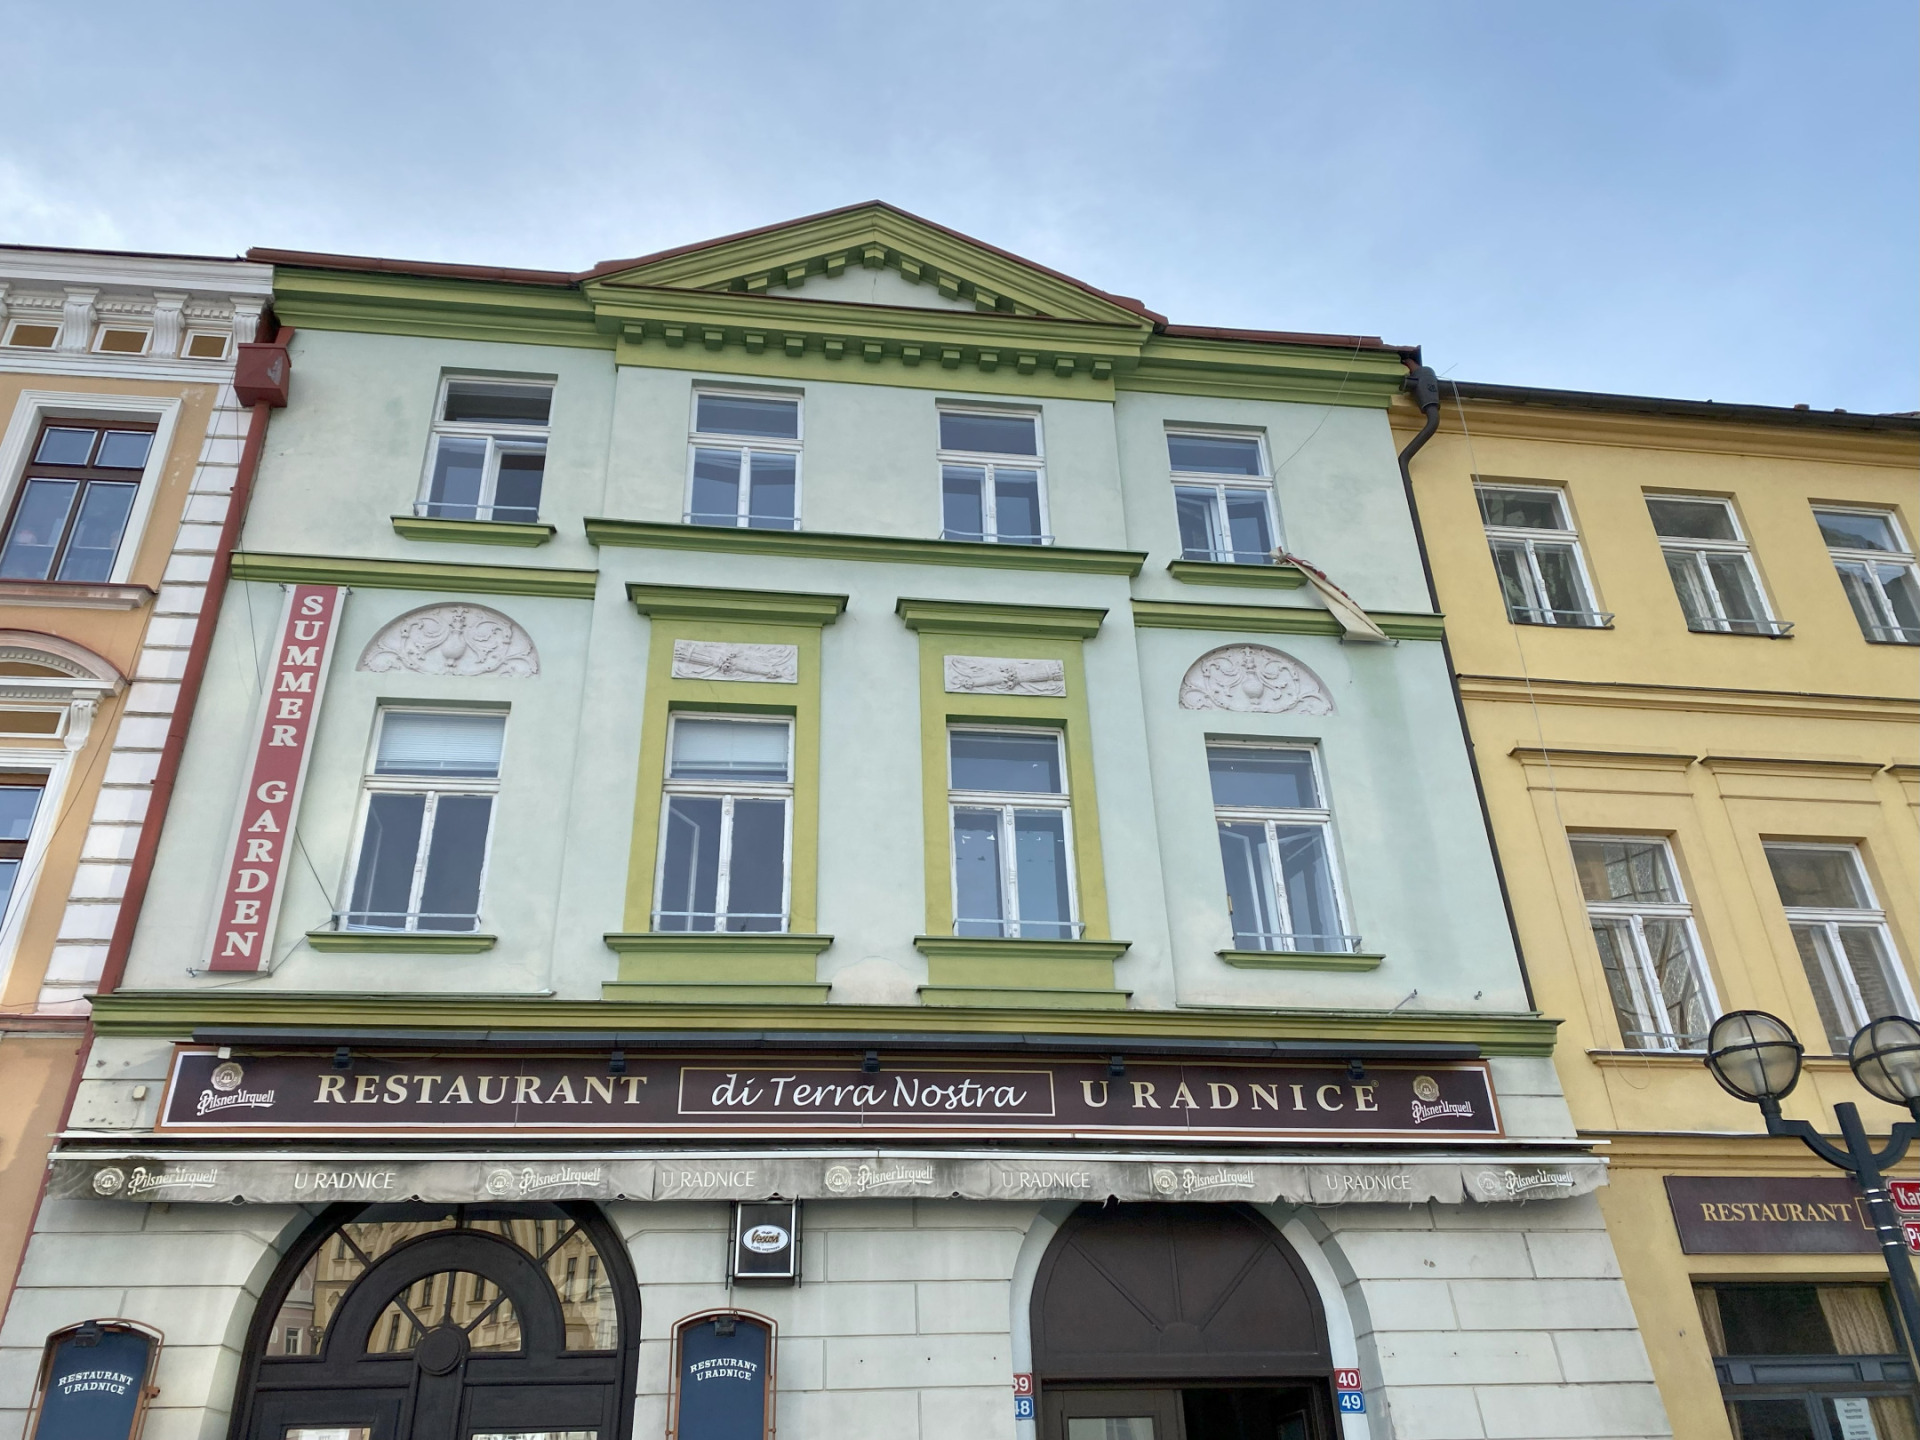 Pronájem prostor restaurace, 500m2, Velké nám. Hradec Králové